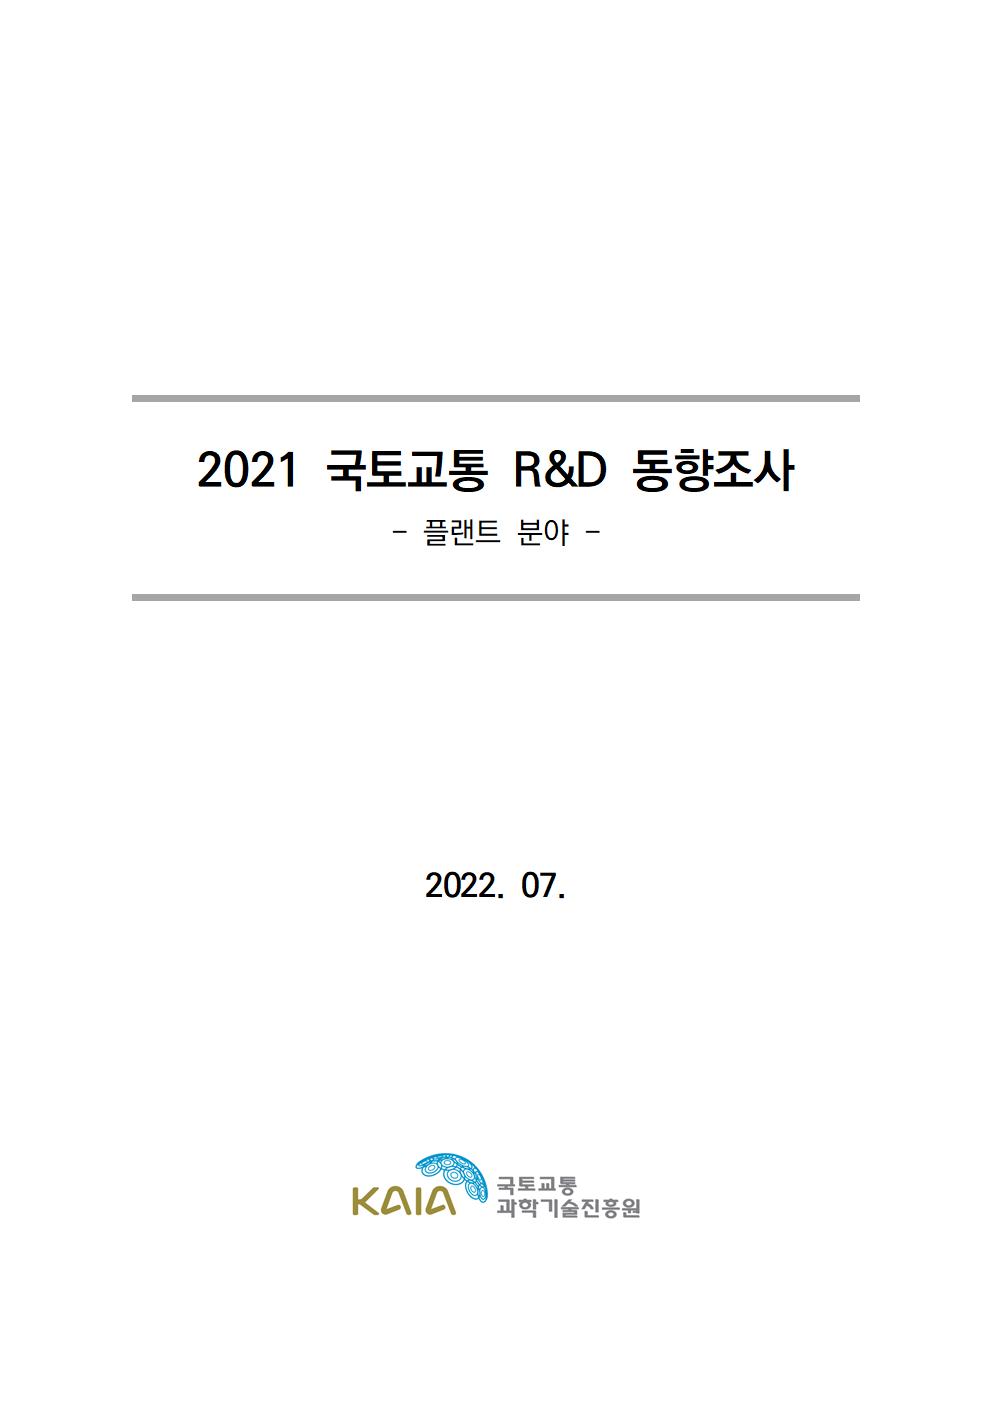 [동향조사] 2021 국토교통 R&D 동향조사 보고서(플랜트 분야) 